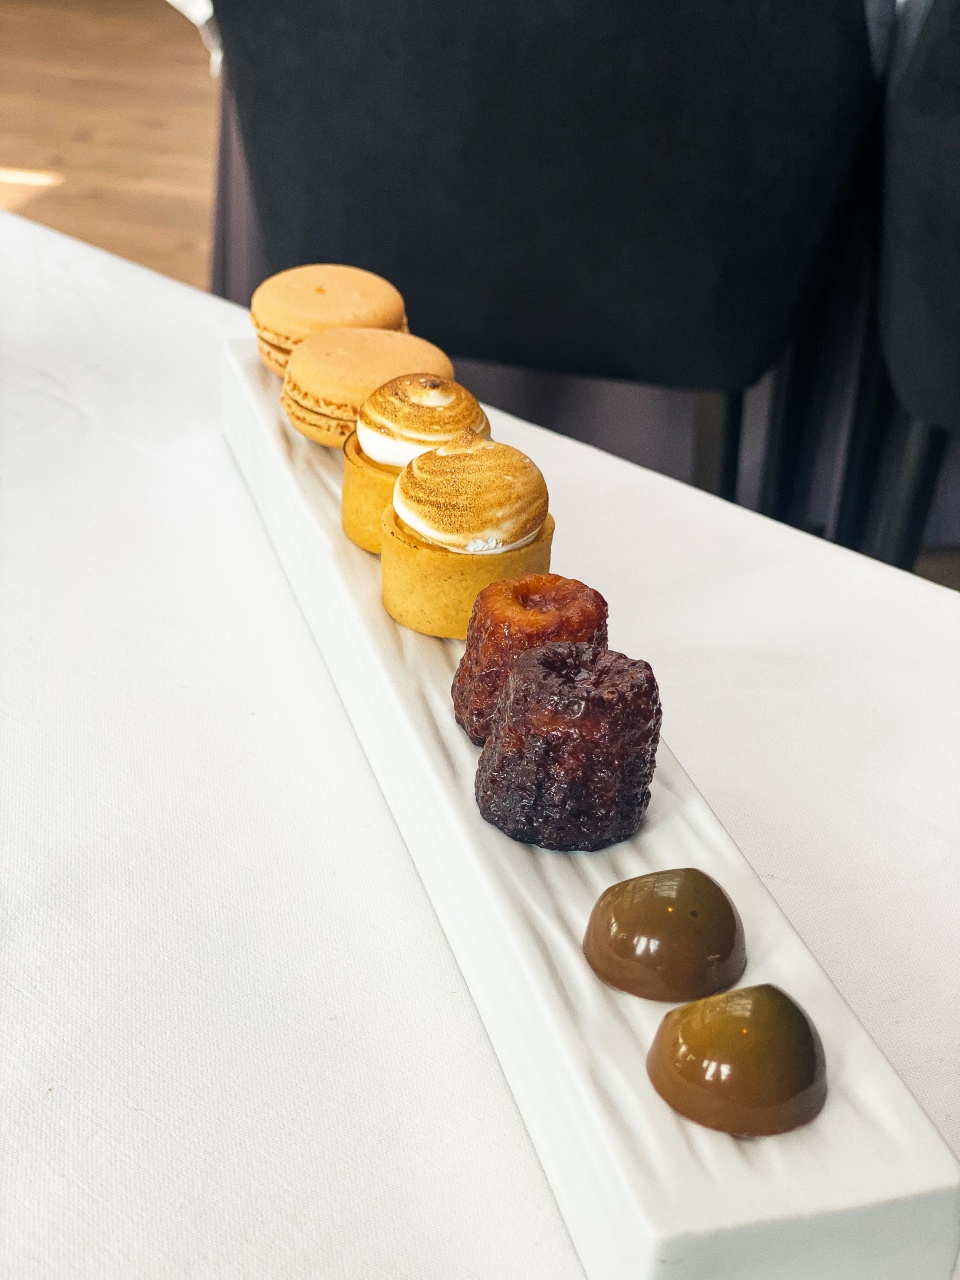 Een verleidelijke selectie van kleine desserts, gebakjes en chocolade, prachtig gepresenteerd op een schaal, die dienen als een zoete afsluiting van een culinaire ervaring in restaurant De Bakermat.